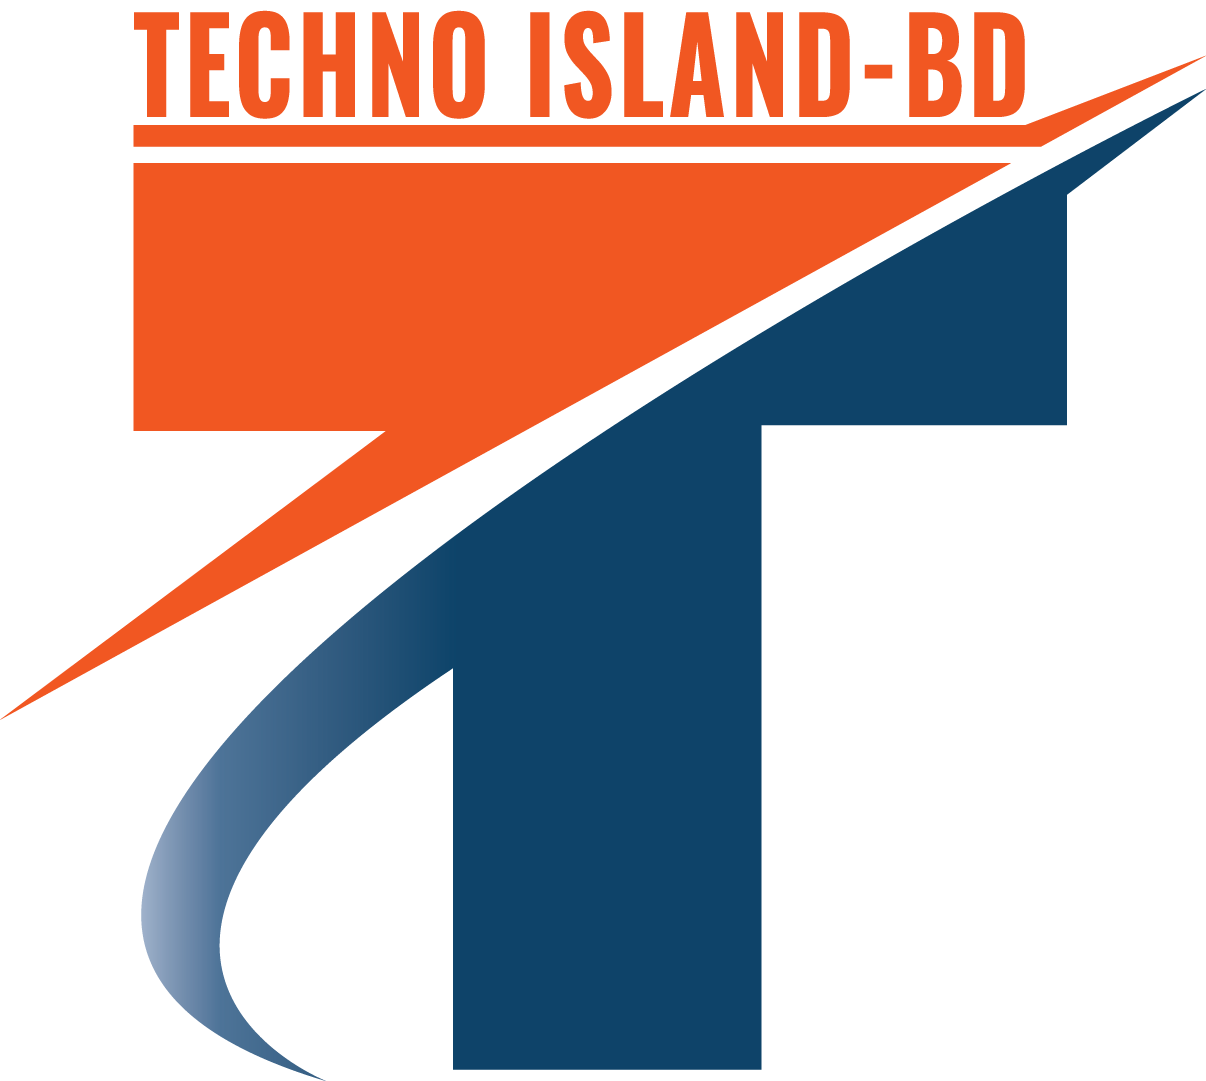 Techno Island-BD